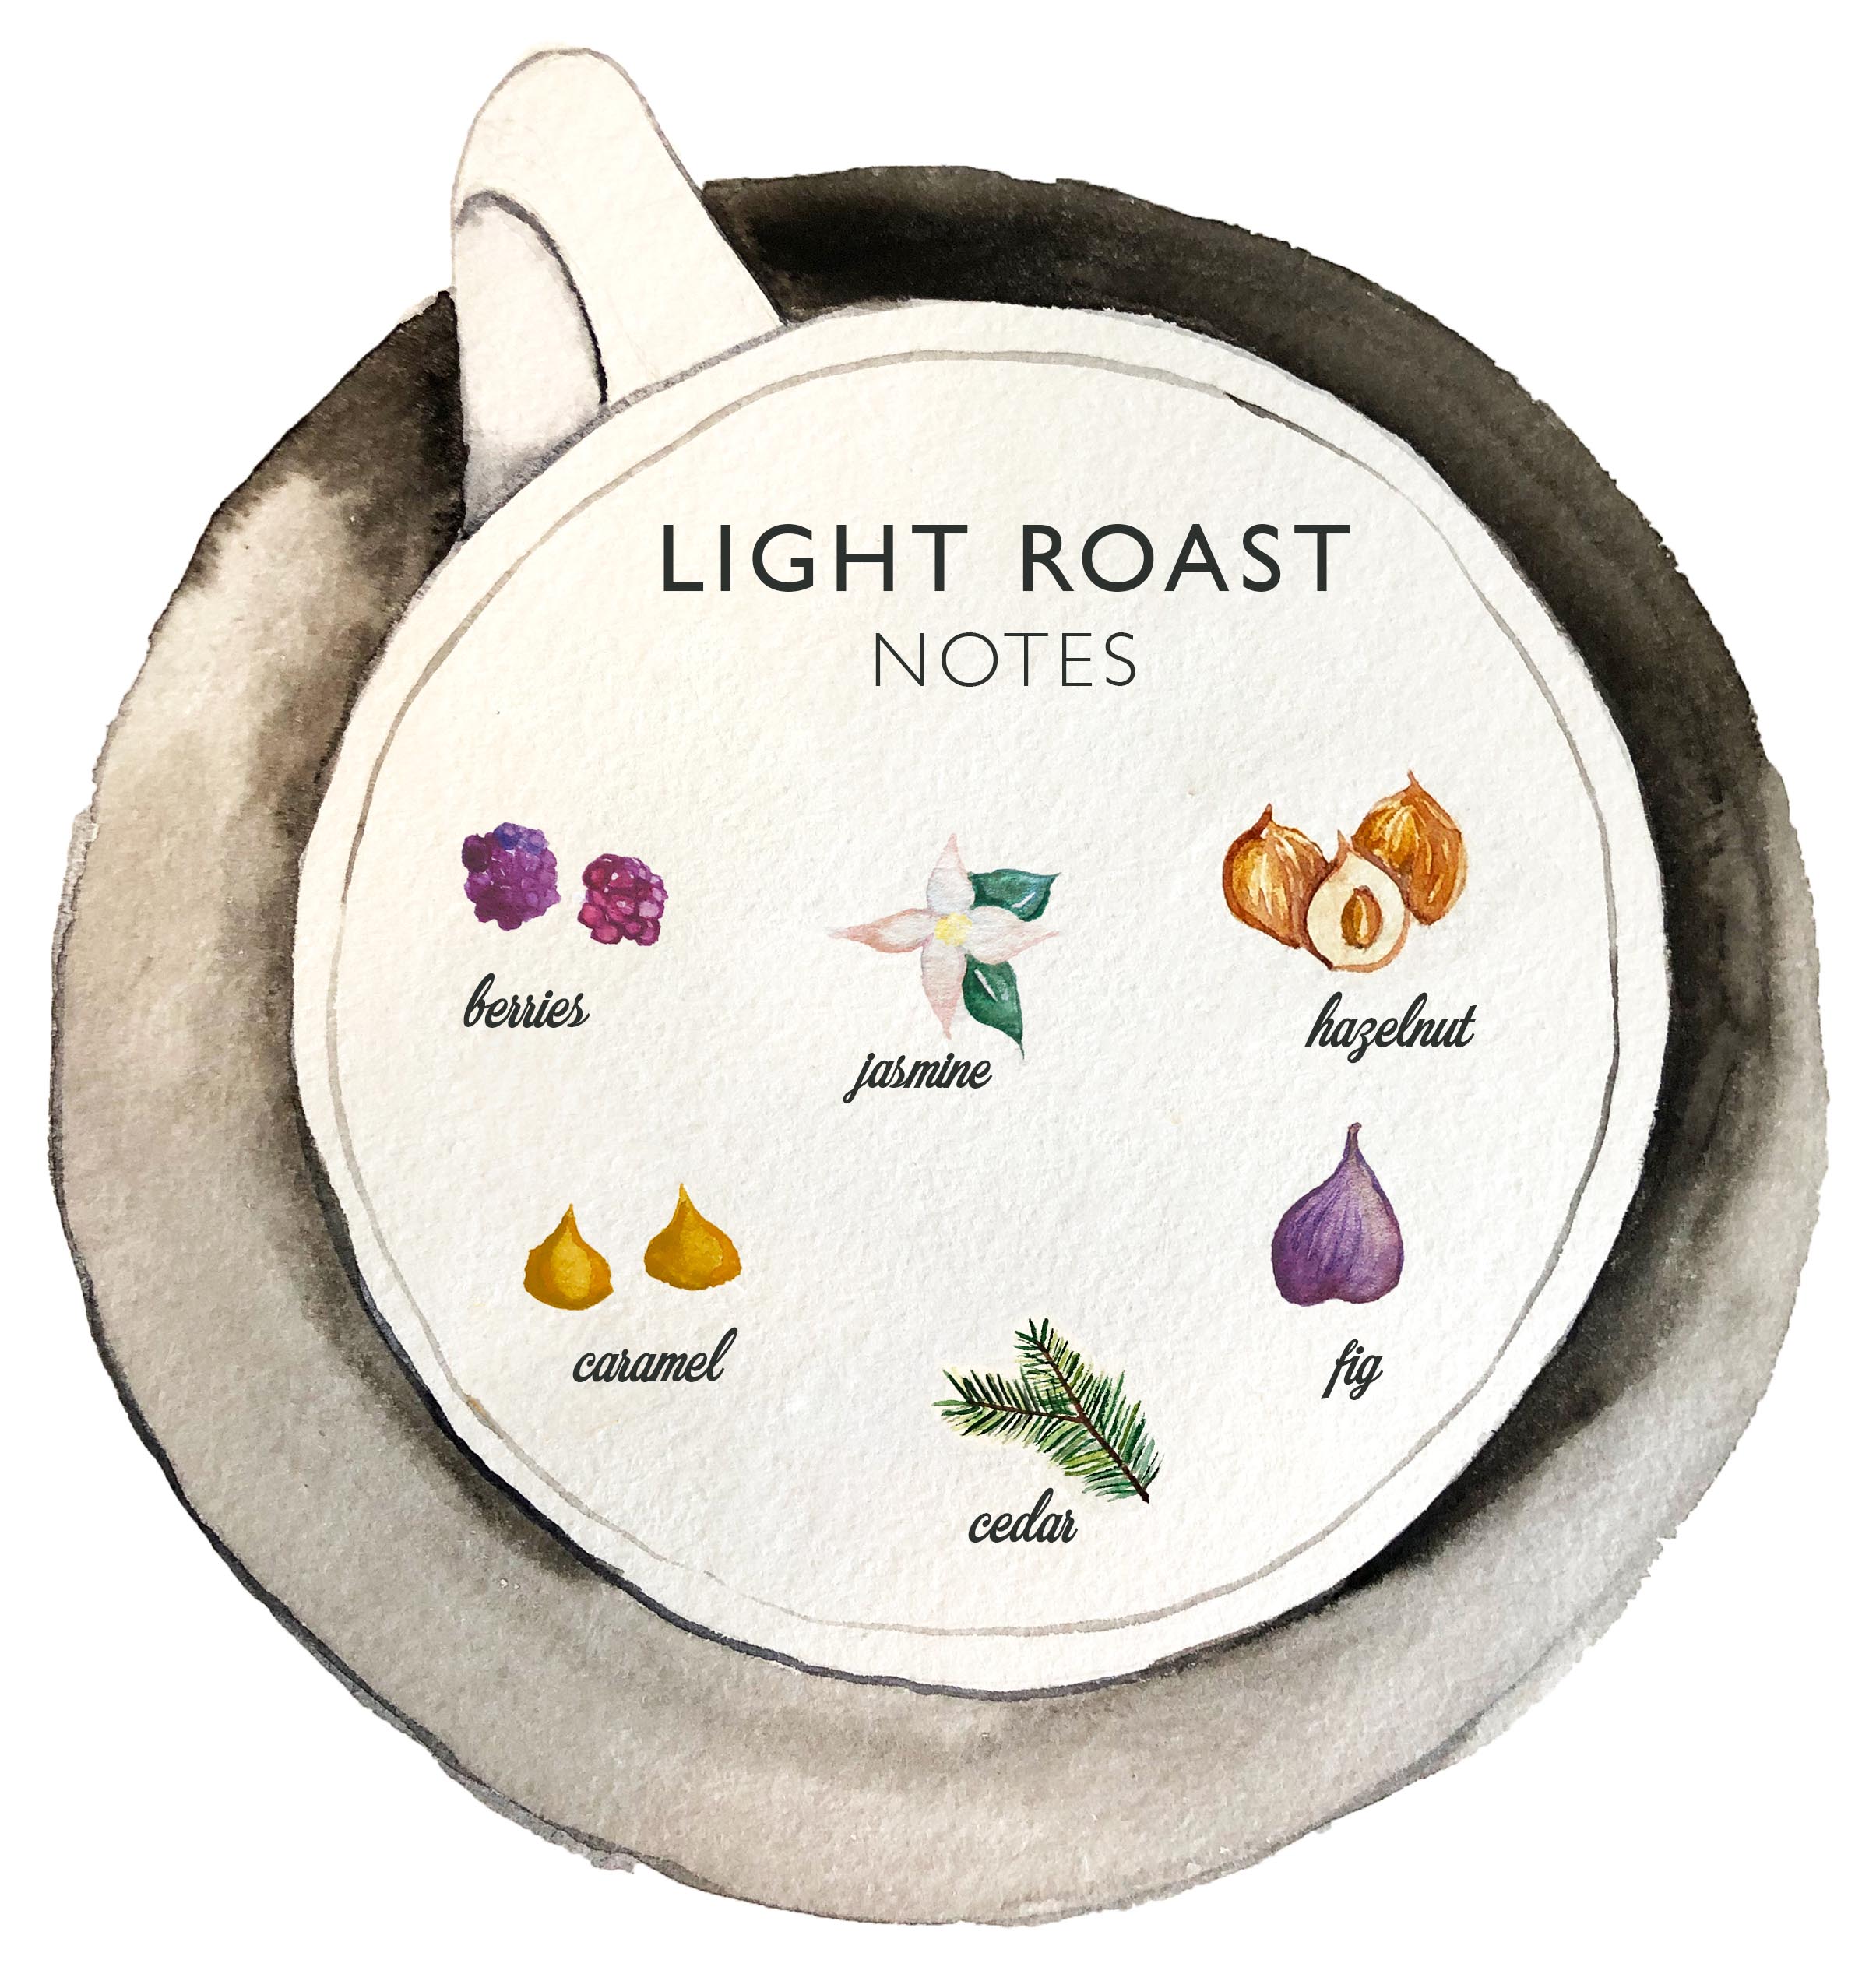 Kona Coffee &amp; Tea’s 2019 light roast has notes of berries, jasmine flower, hazelnut, caramel, cedar, and fig. ART: Dayva Keolanui